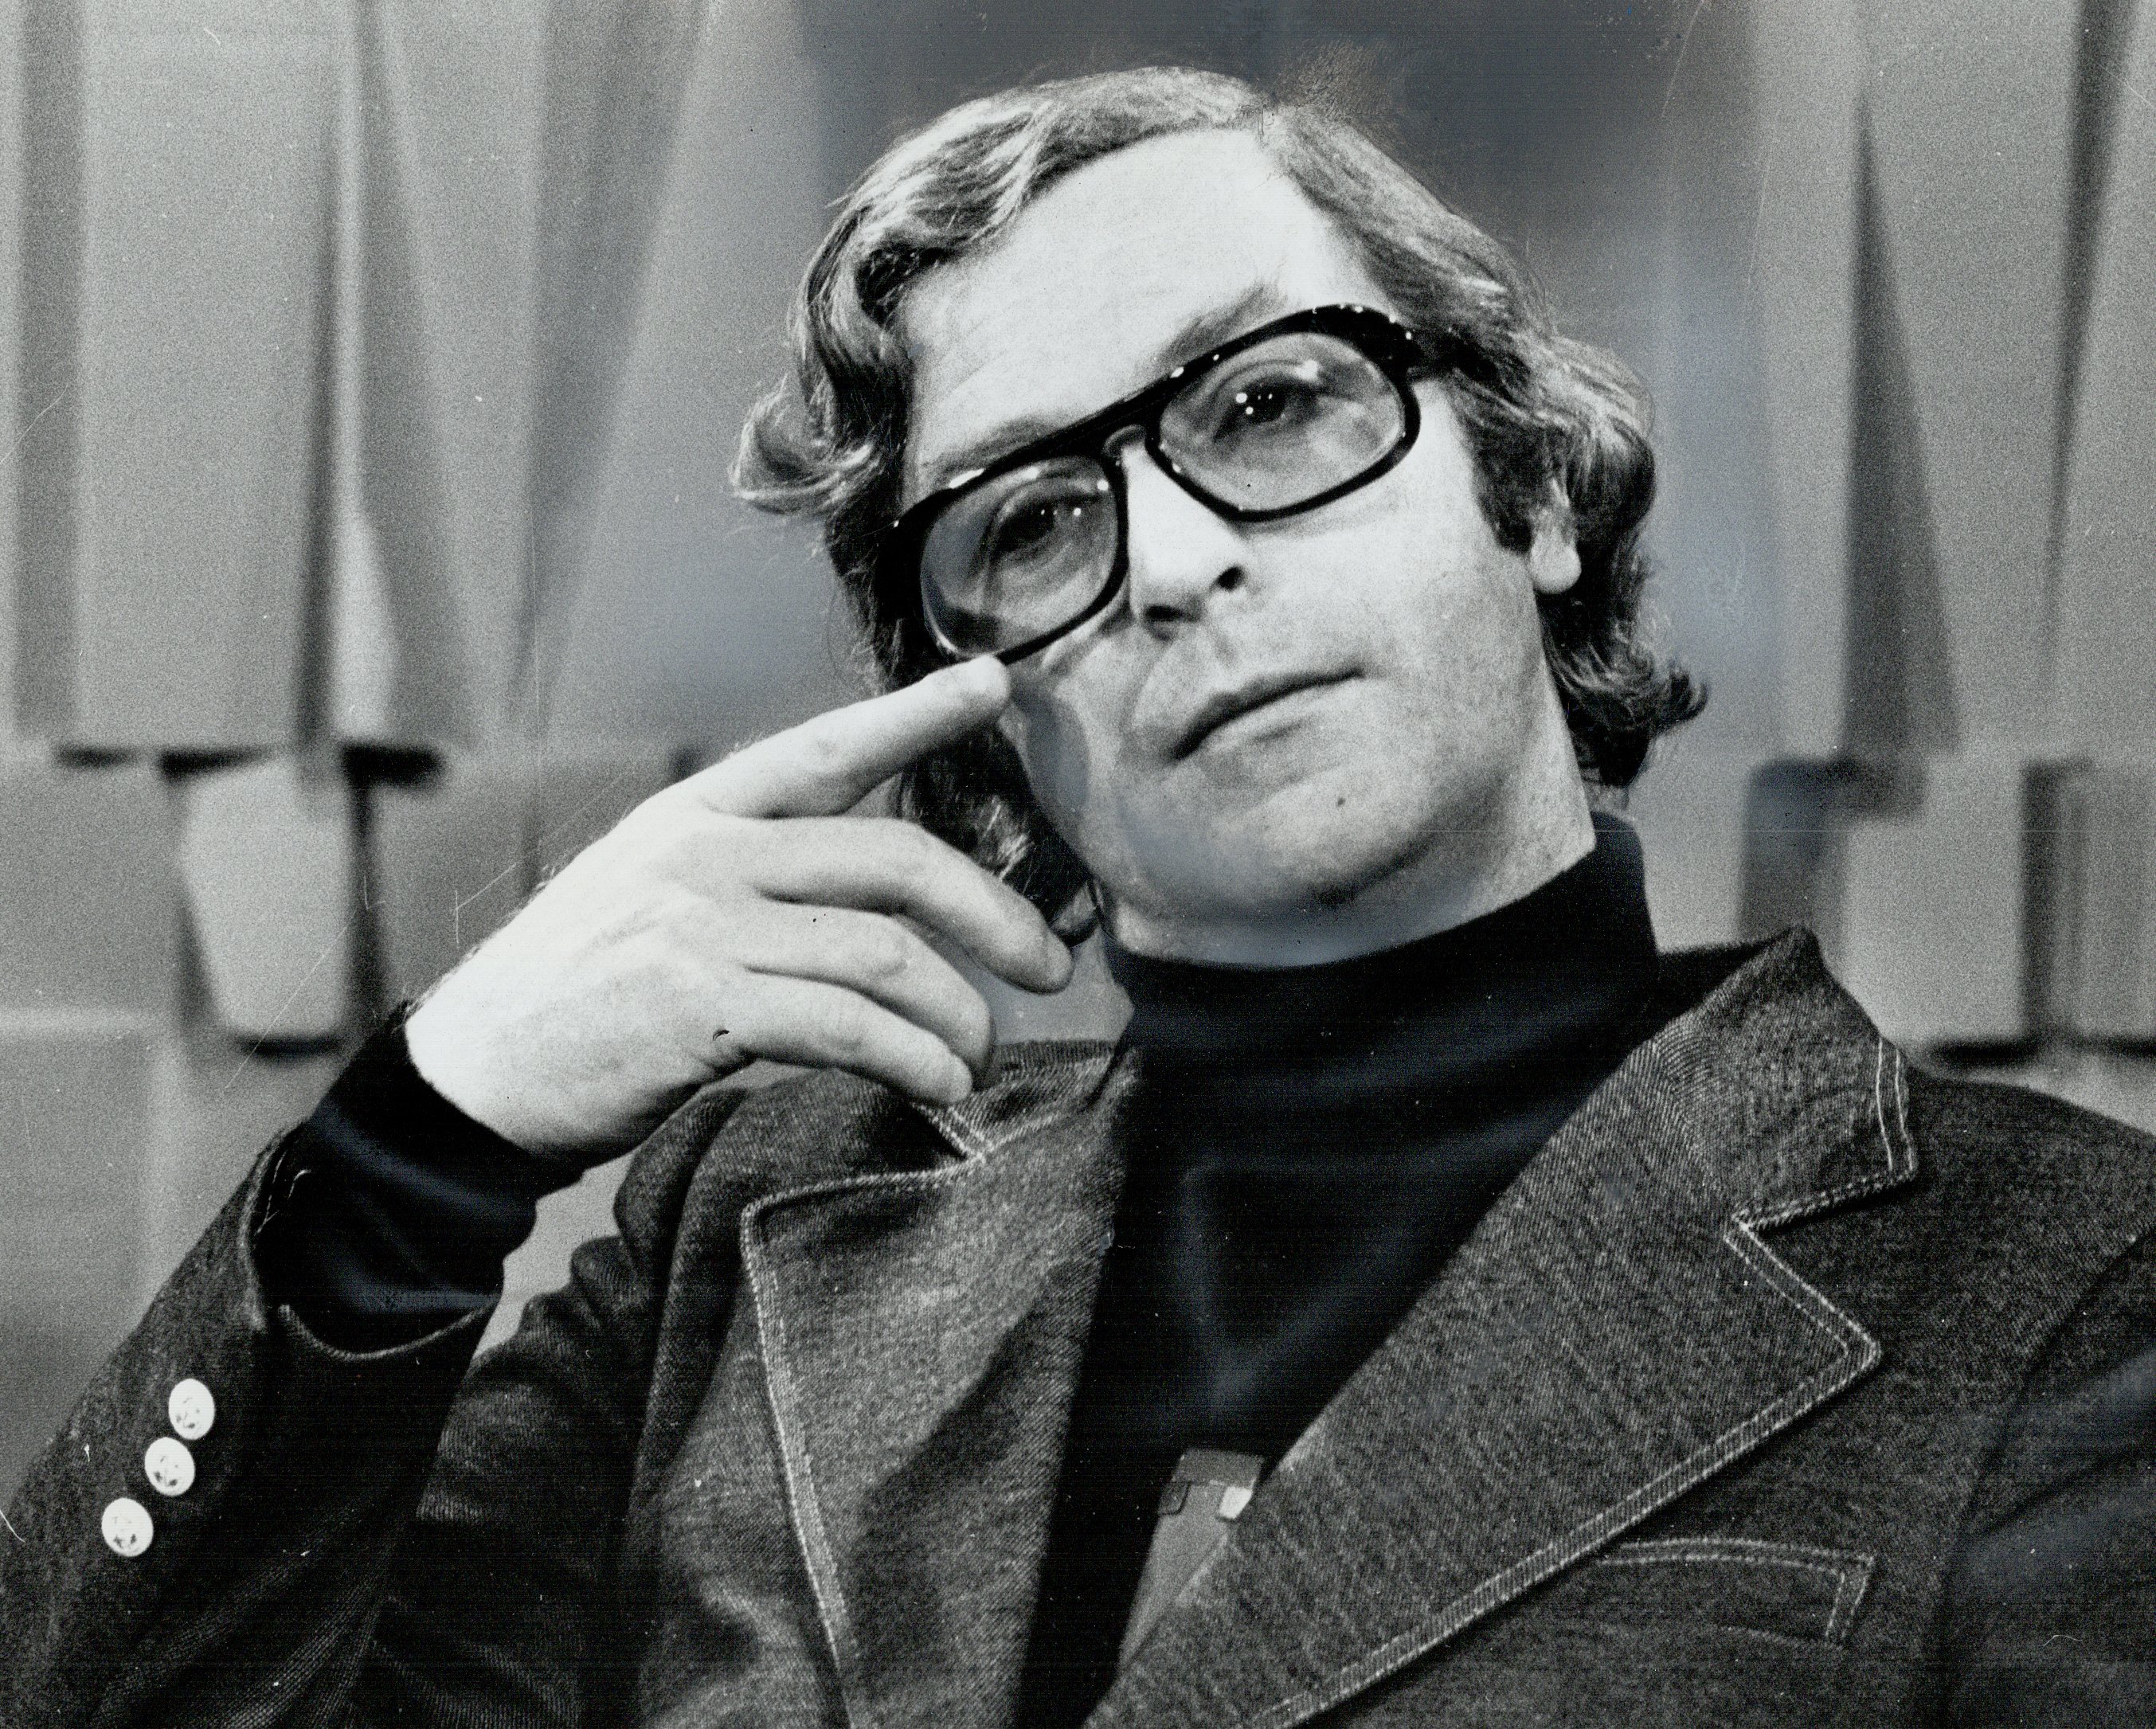 Die britische Filmikone Sir Michael Caine abgebildet in Toronto, Kanada, während er eine Brille trug, gepaart mit einer Jeansjacke und einem Rollkragenpullover.  |  Quelle: Getty Images